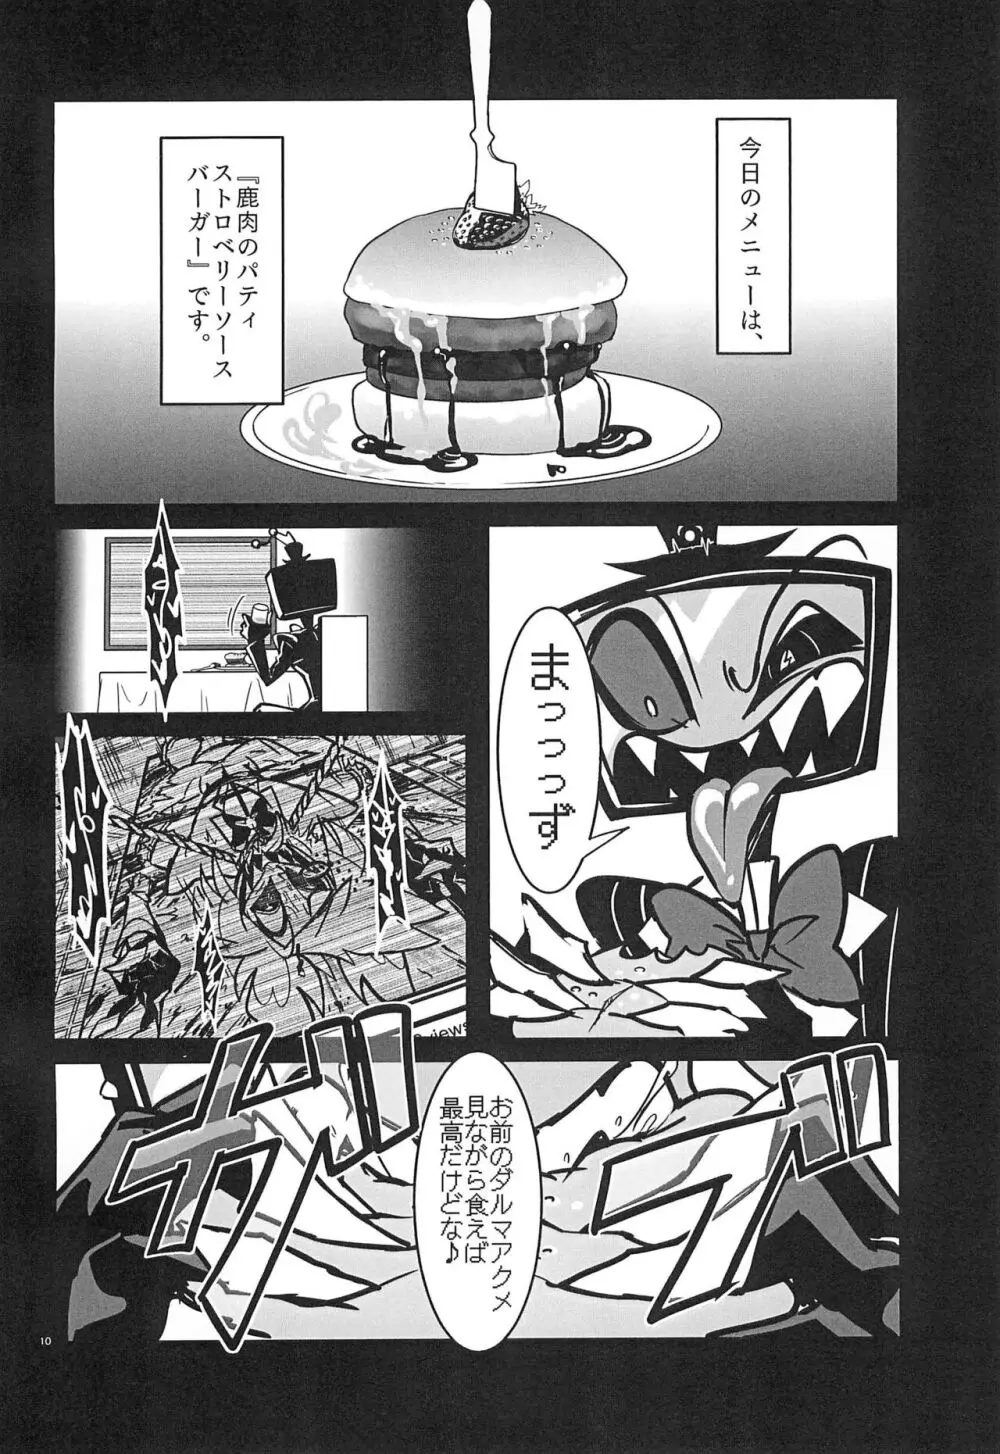 ストロベリーバンビ〜無電悪魔四肢欠損番組〜 - page10